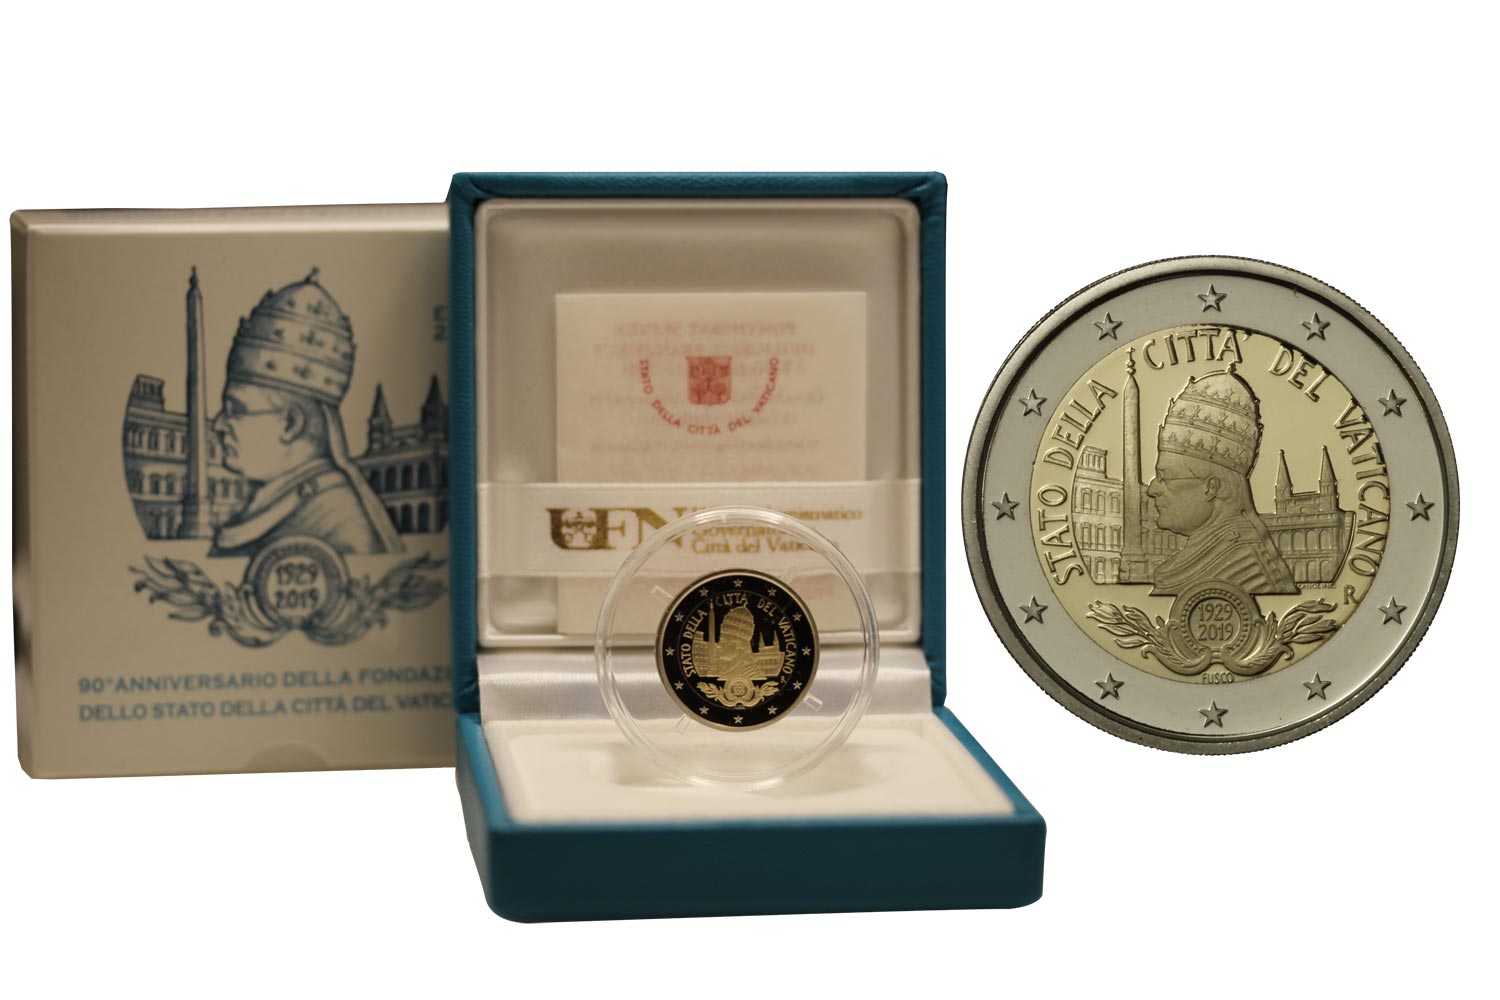 90 anno dell'istituzione dello Stato Citt del Vaticano - 2 Euro in confezione ufficiale